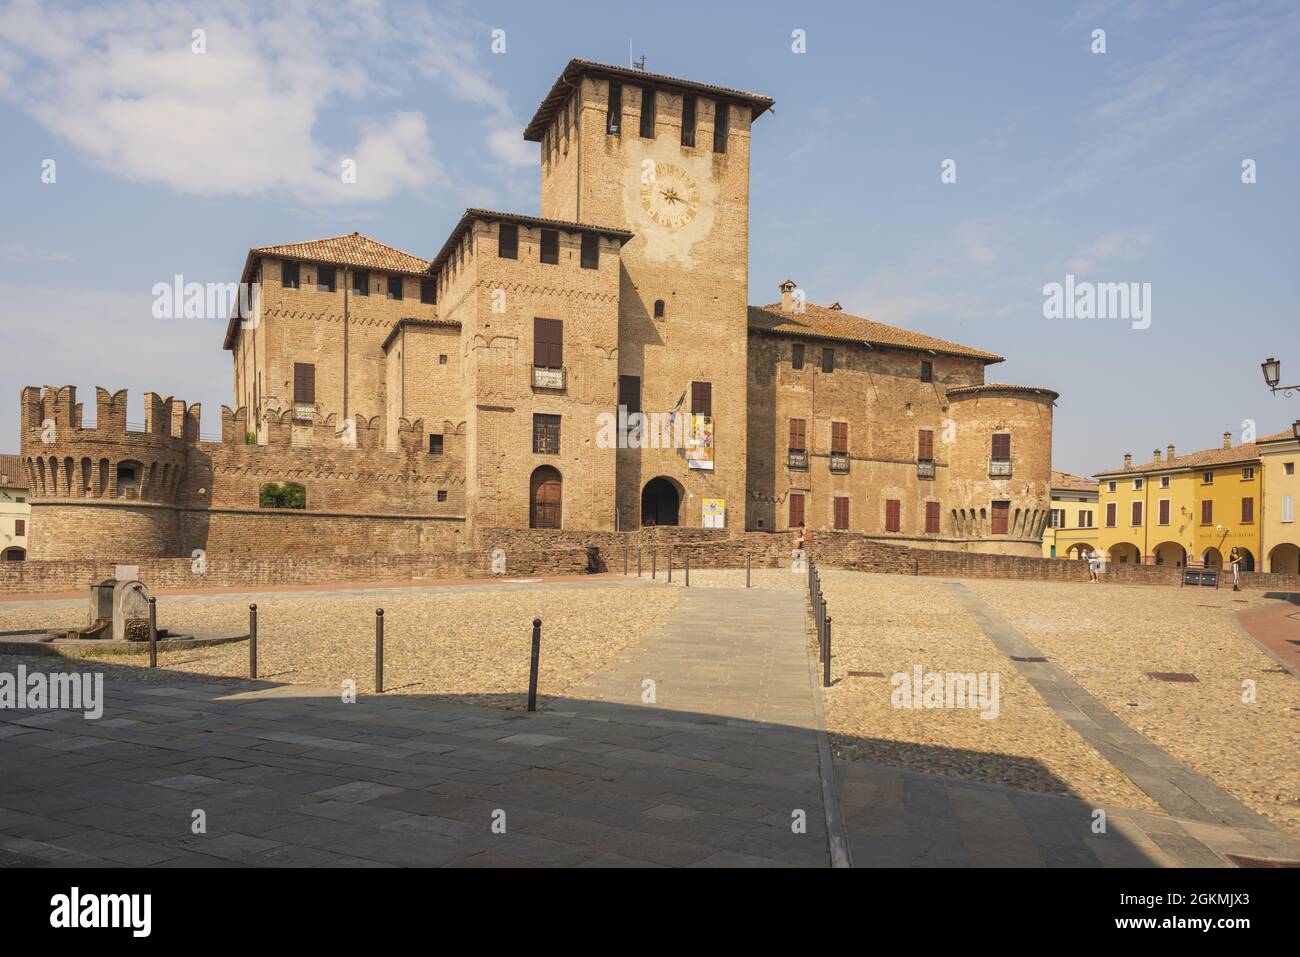 castello fontanellato italia parma 16 Stock Photo